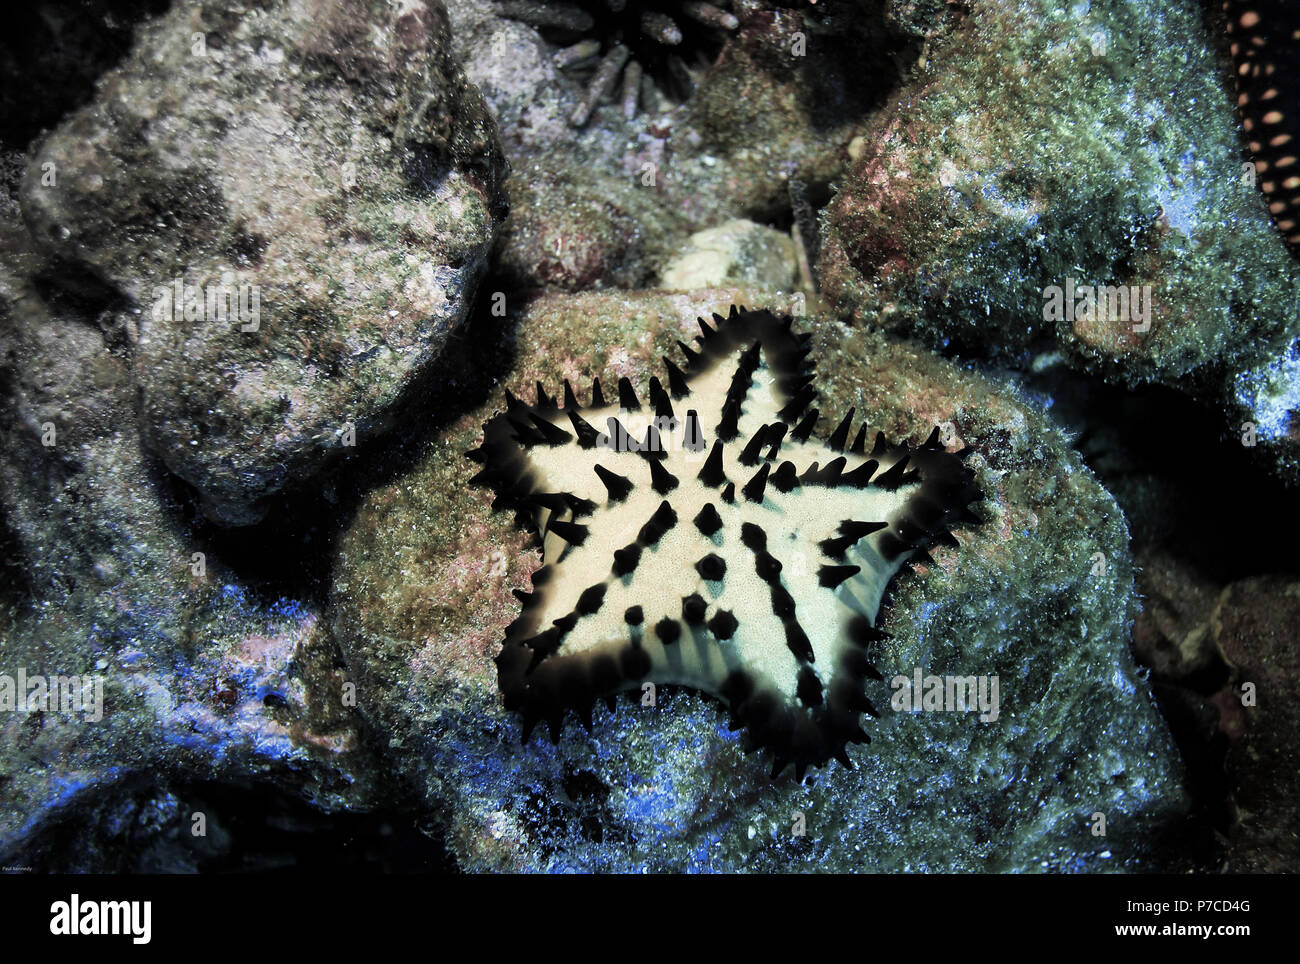 Estrella de mar de chocolate (Protoreaster nodosus) bajo el agua en las Islas Galápagos Foto de stock